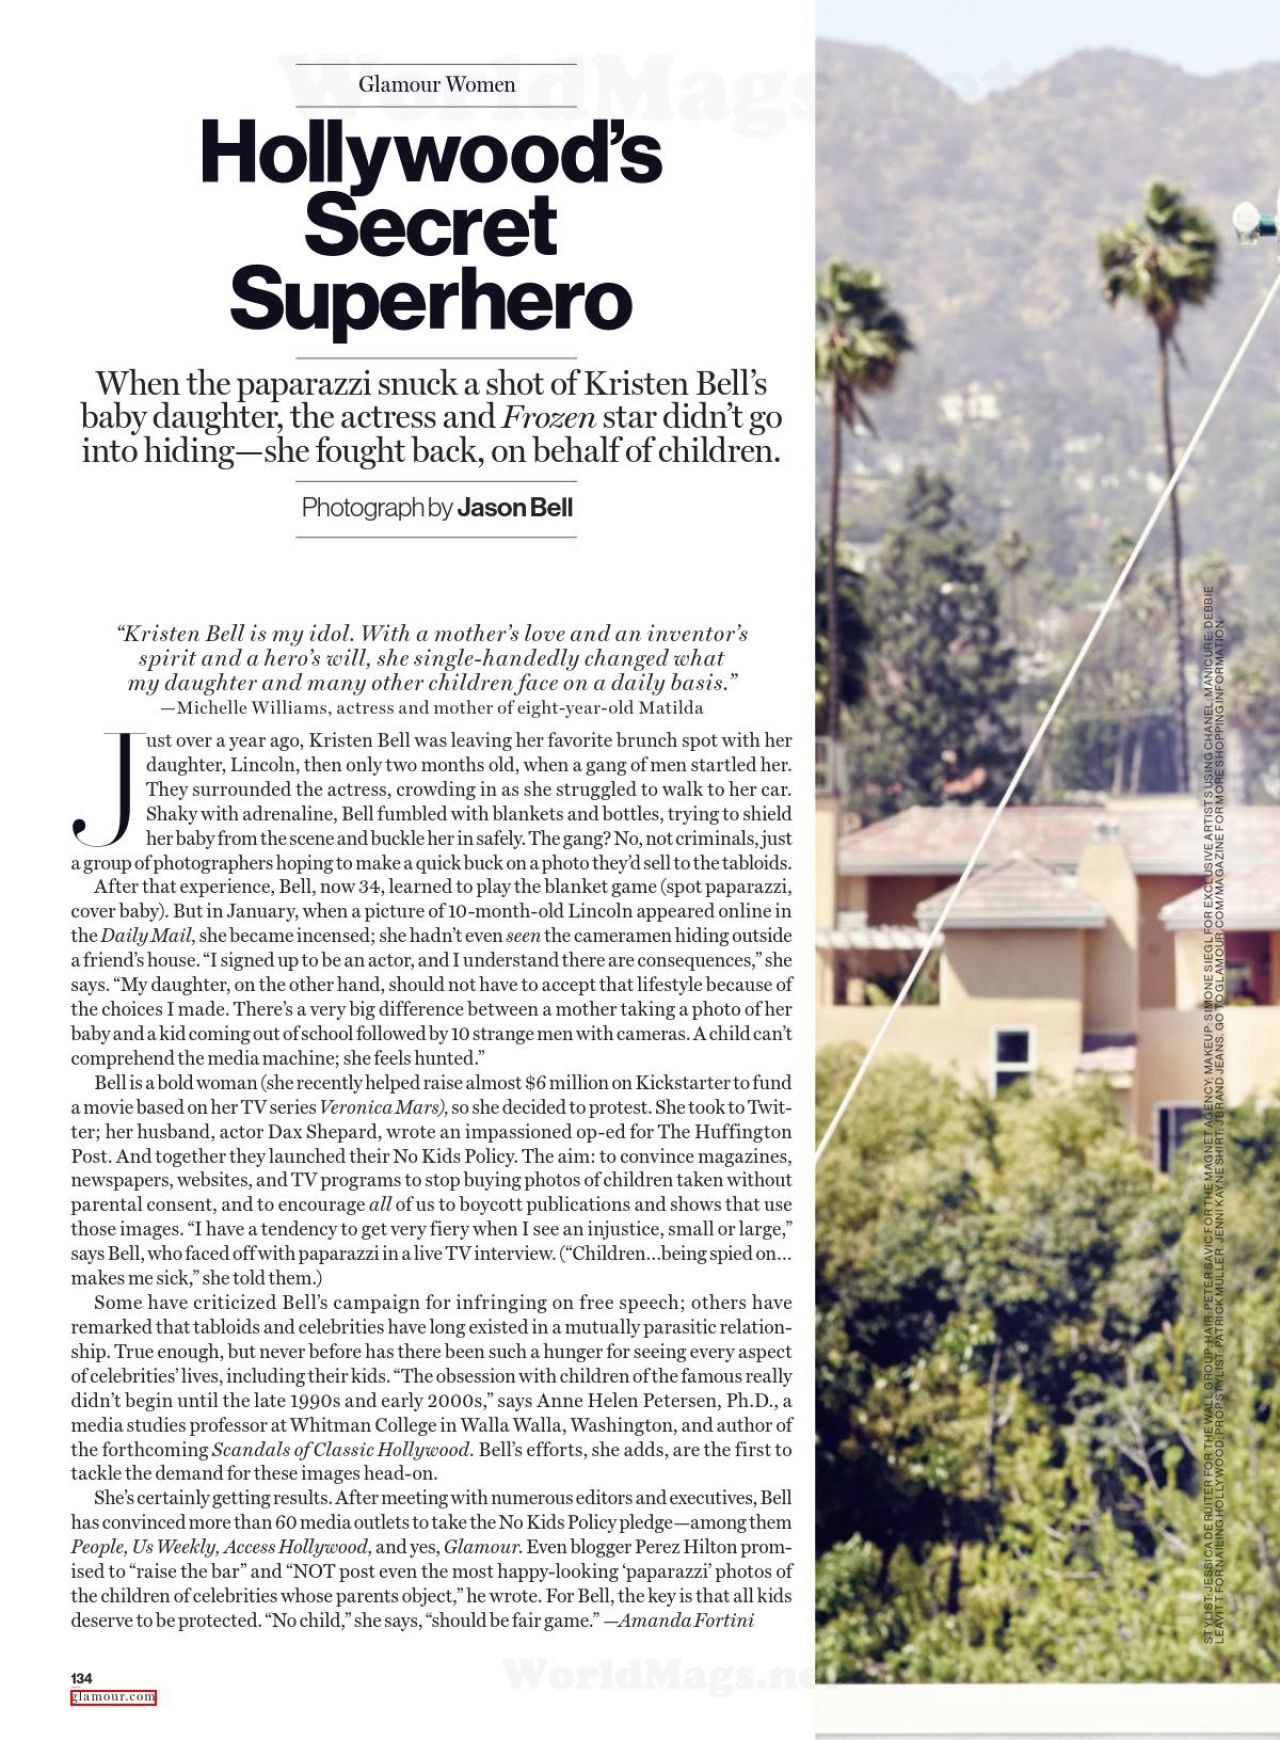 Kristen Bell: Hollywood's Secret Superhero